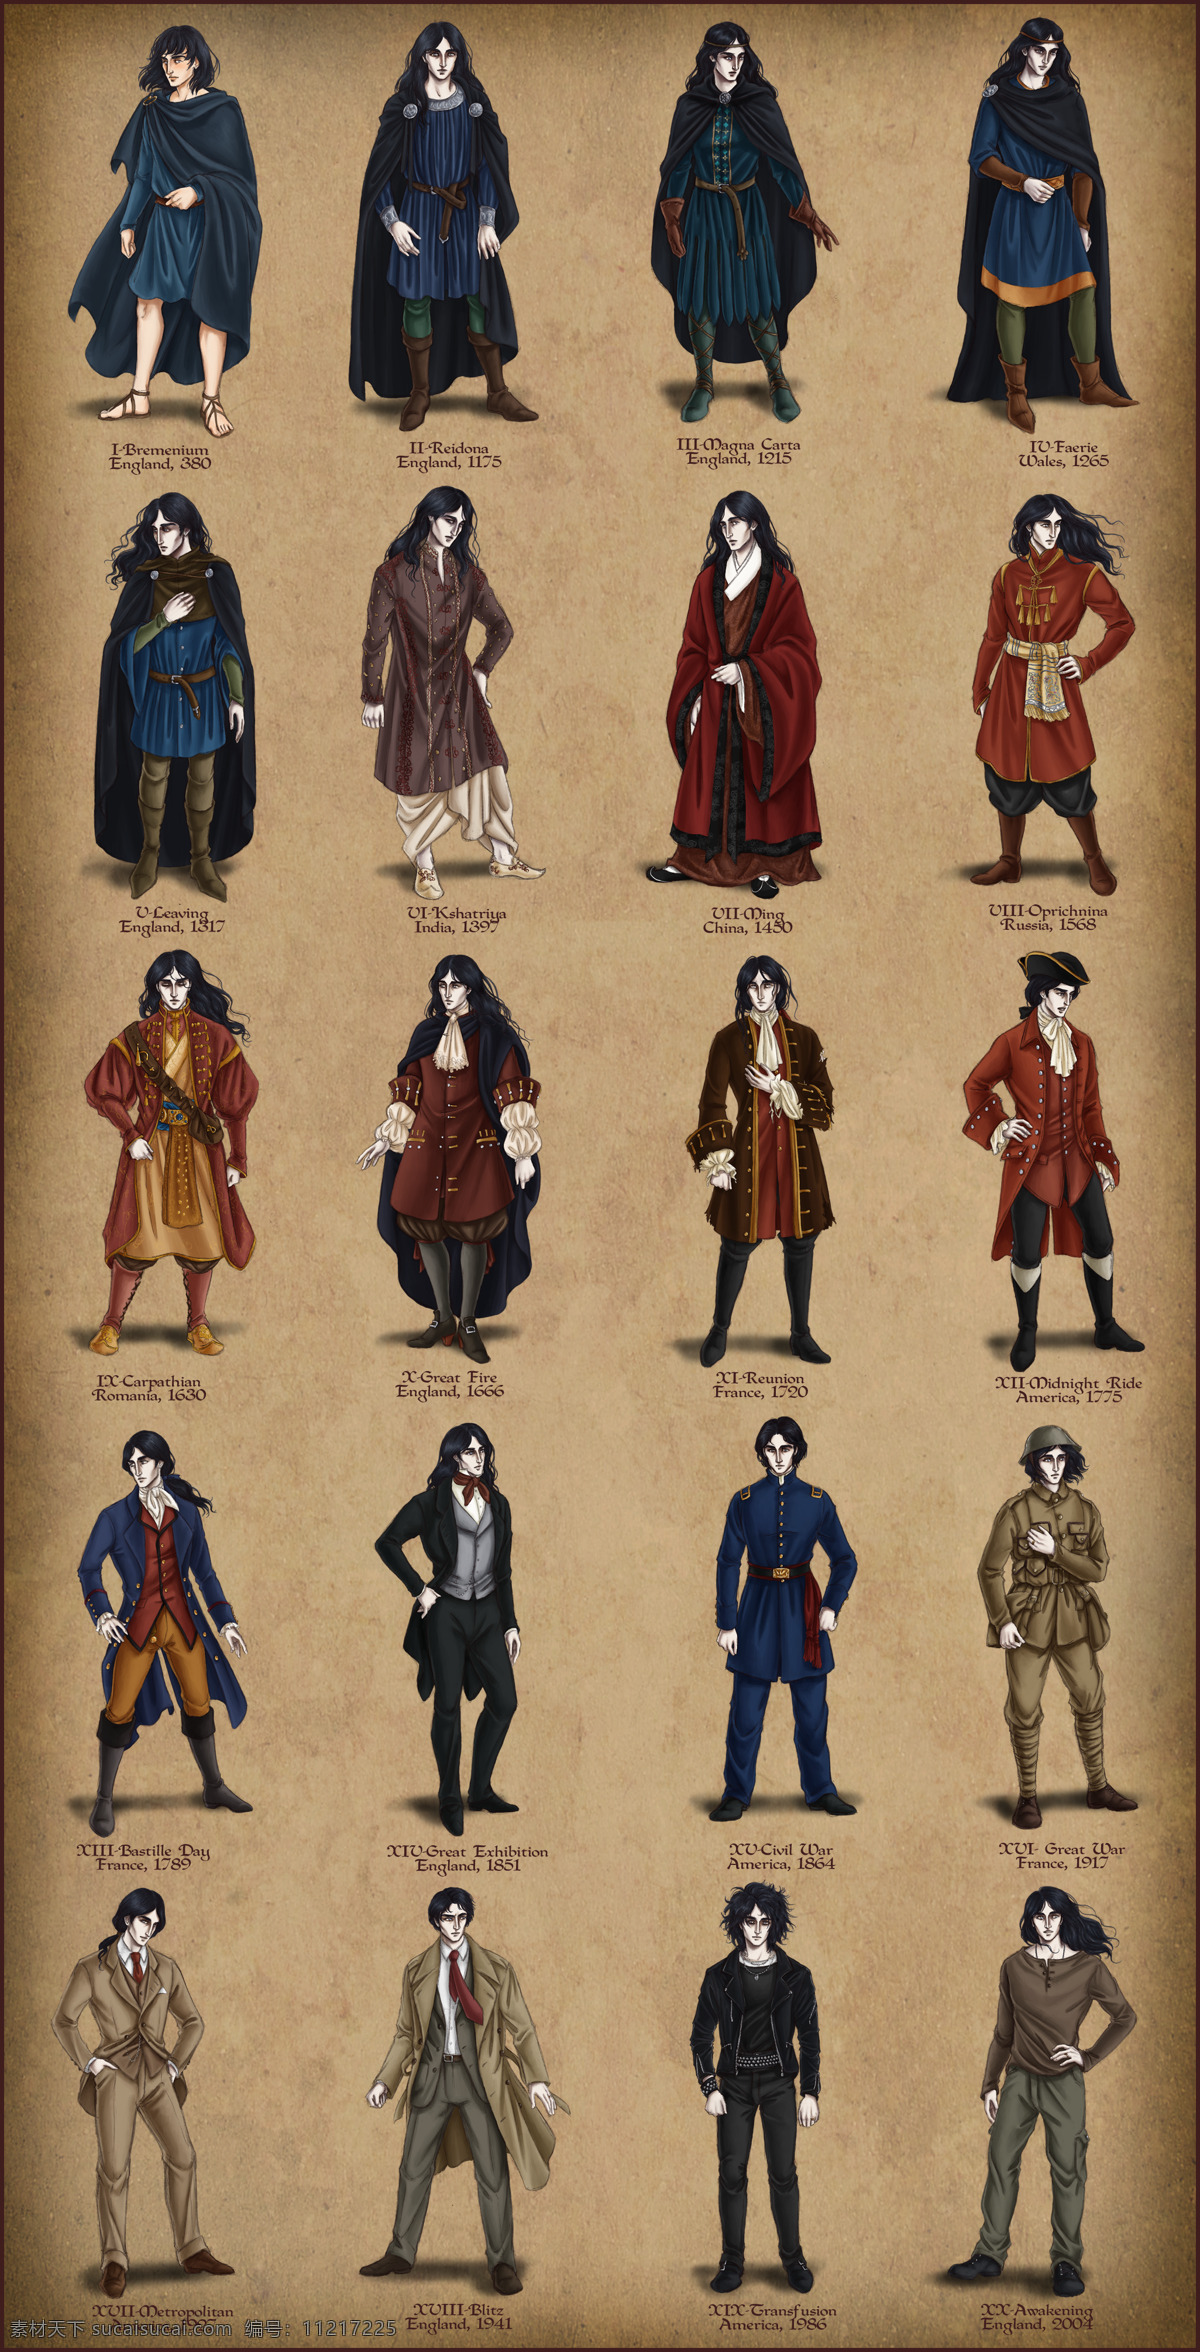 动漫动画 动漫人物 服饰 服装设计 服装设计手稿 欧洲 文艺复兴 中世纪 设计素材 模板下载 其他服装素材